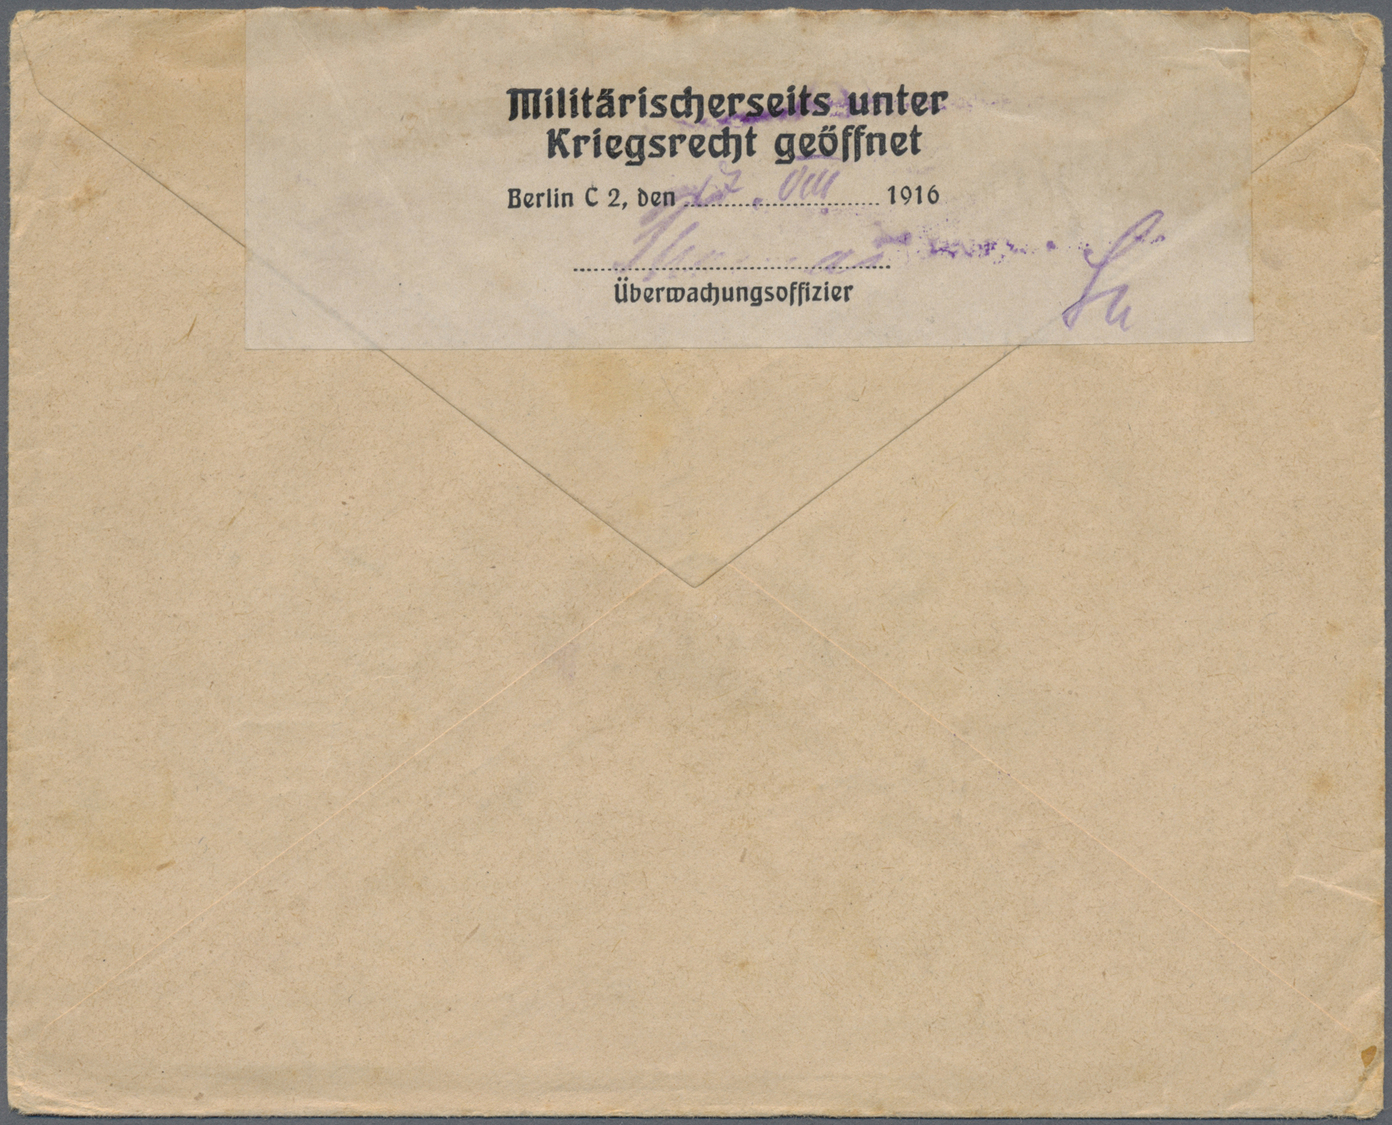 Br Deutsche Post In Der Türkei - Stempel: 1916, FELDPOST MIL.MISS.KONSTANTINOPEL Auf Zwei FP-Belegen (B - Turkse Rijk (kantoren)